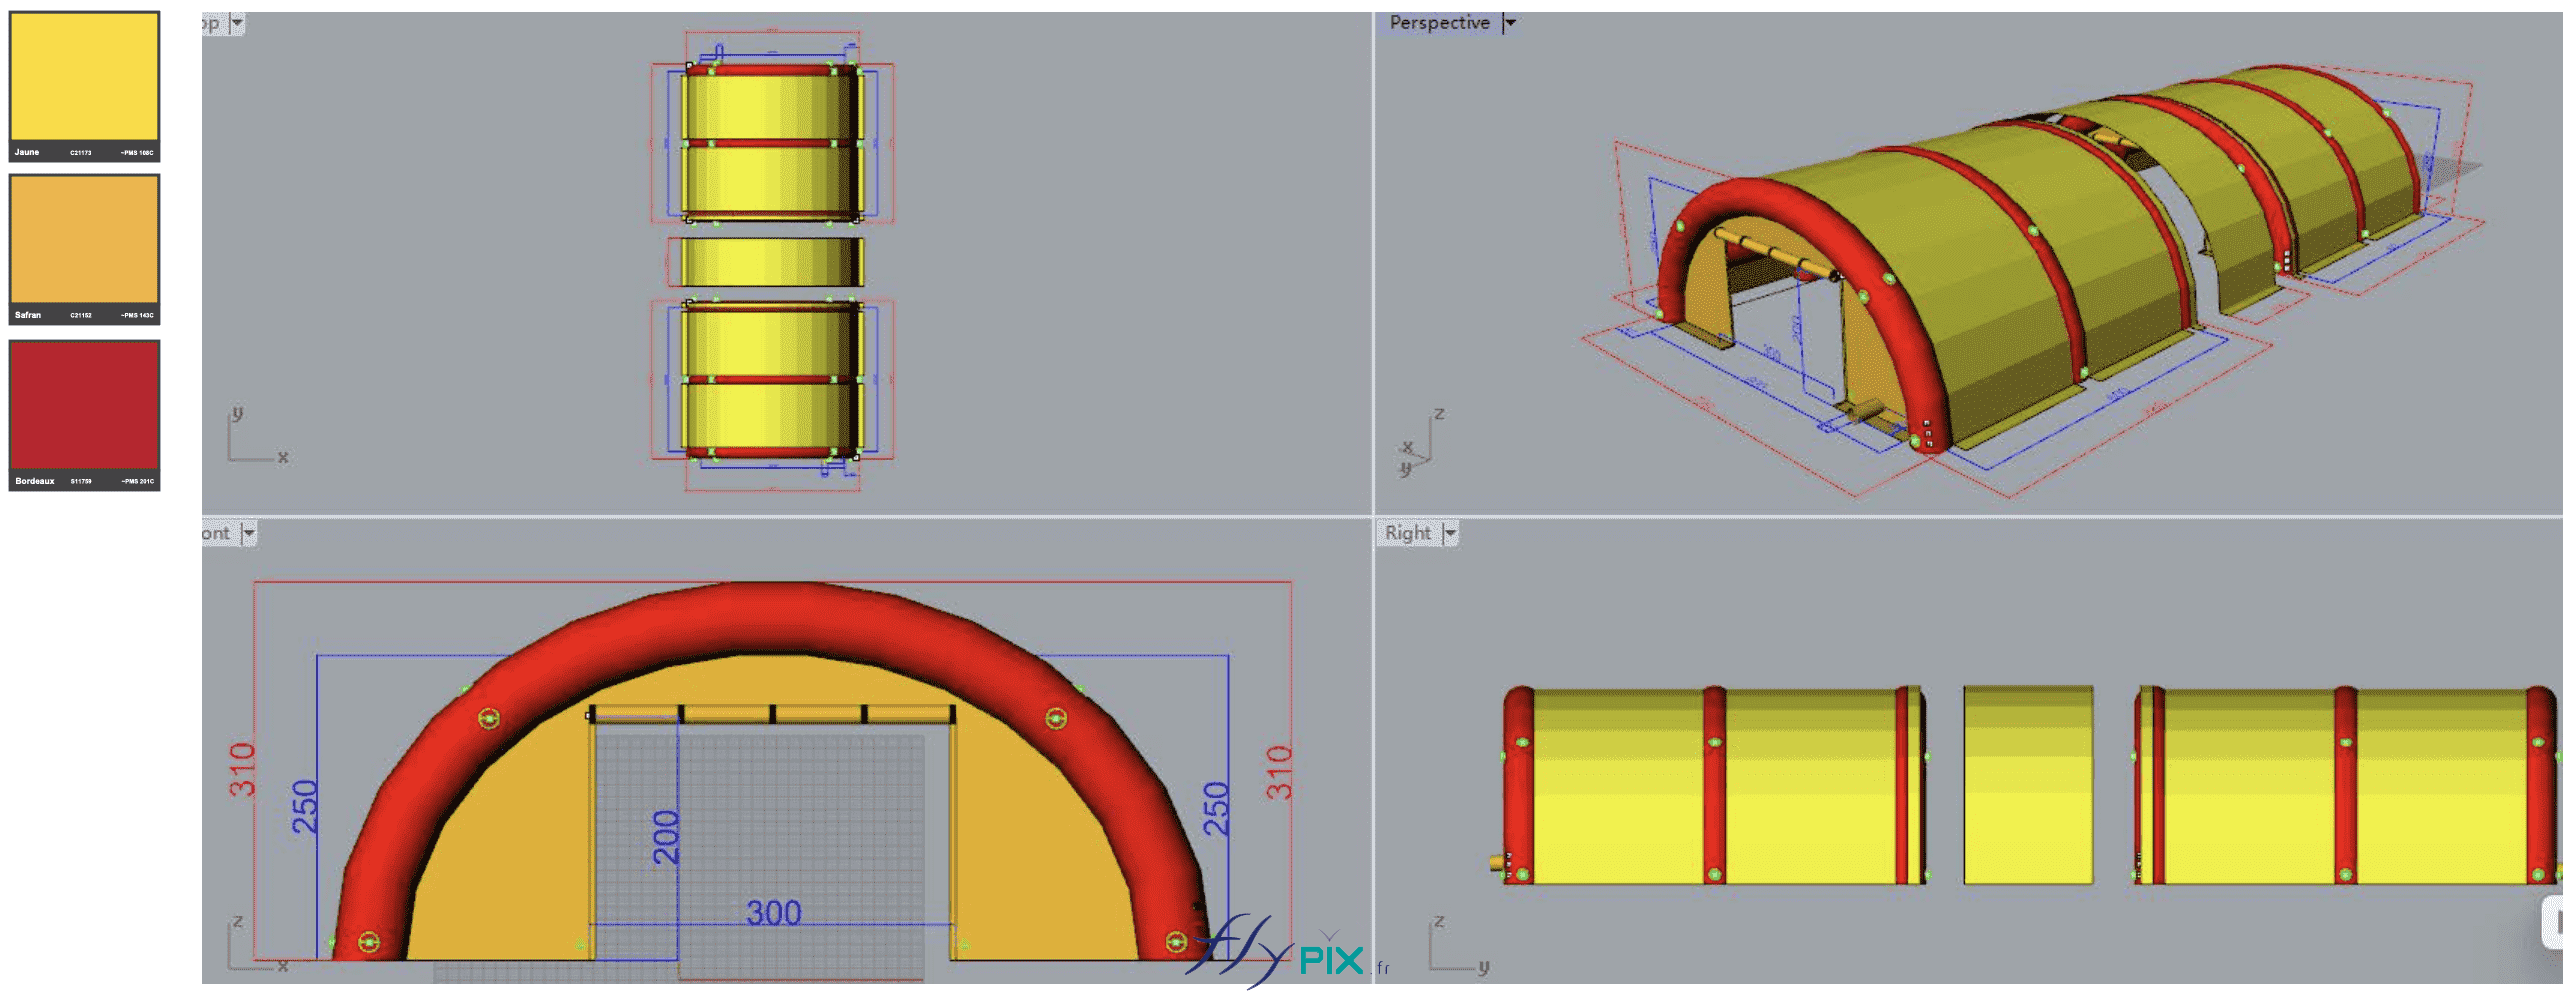 Une tente gonflable de chantier piscine, composée de 2 modules tunnels, de dimensions L = 6 m x l = 6 m x H = 2.5 m. 